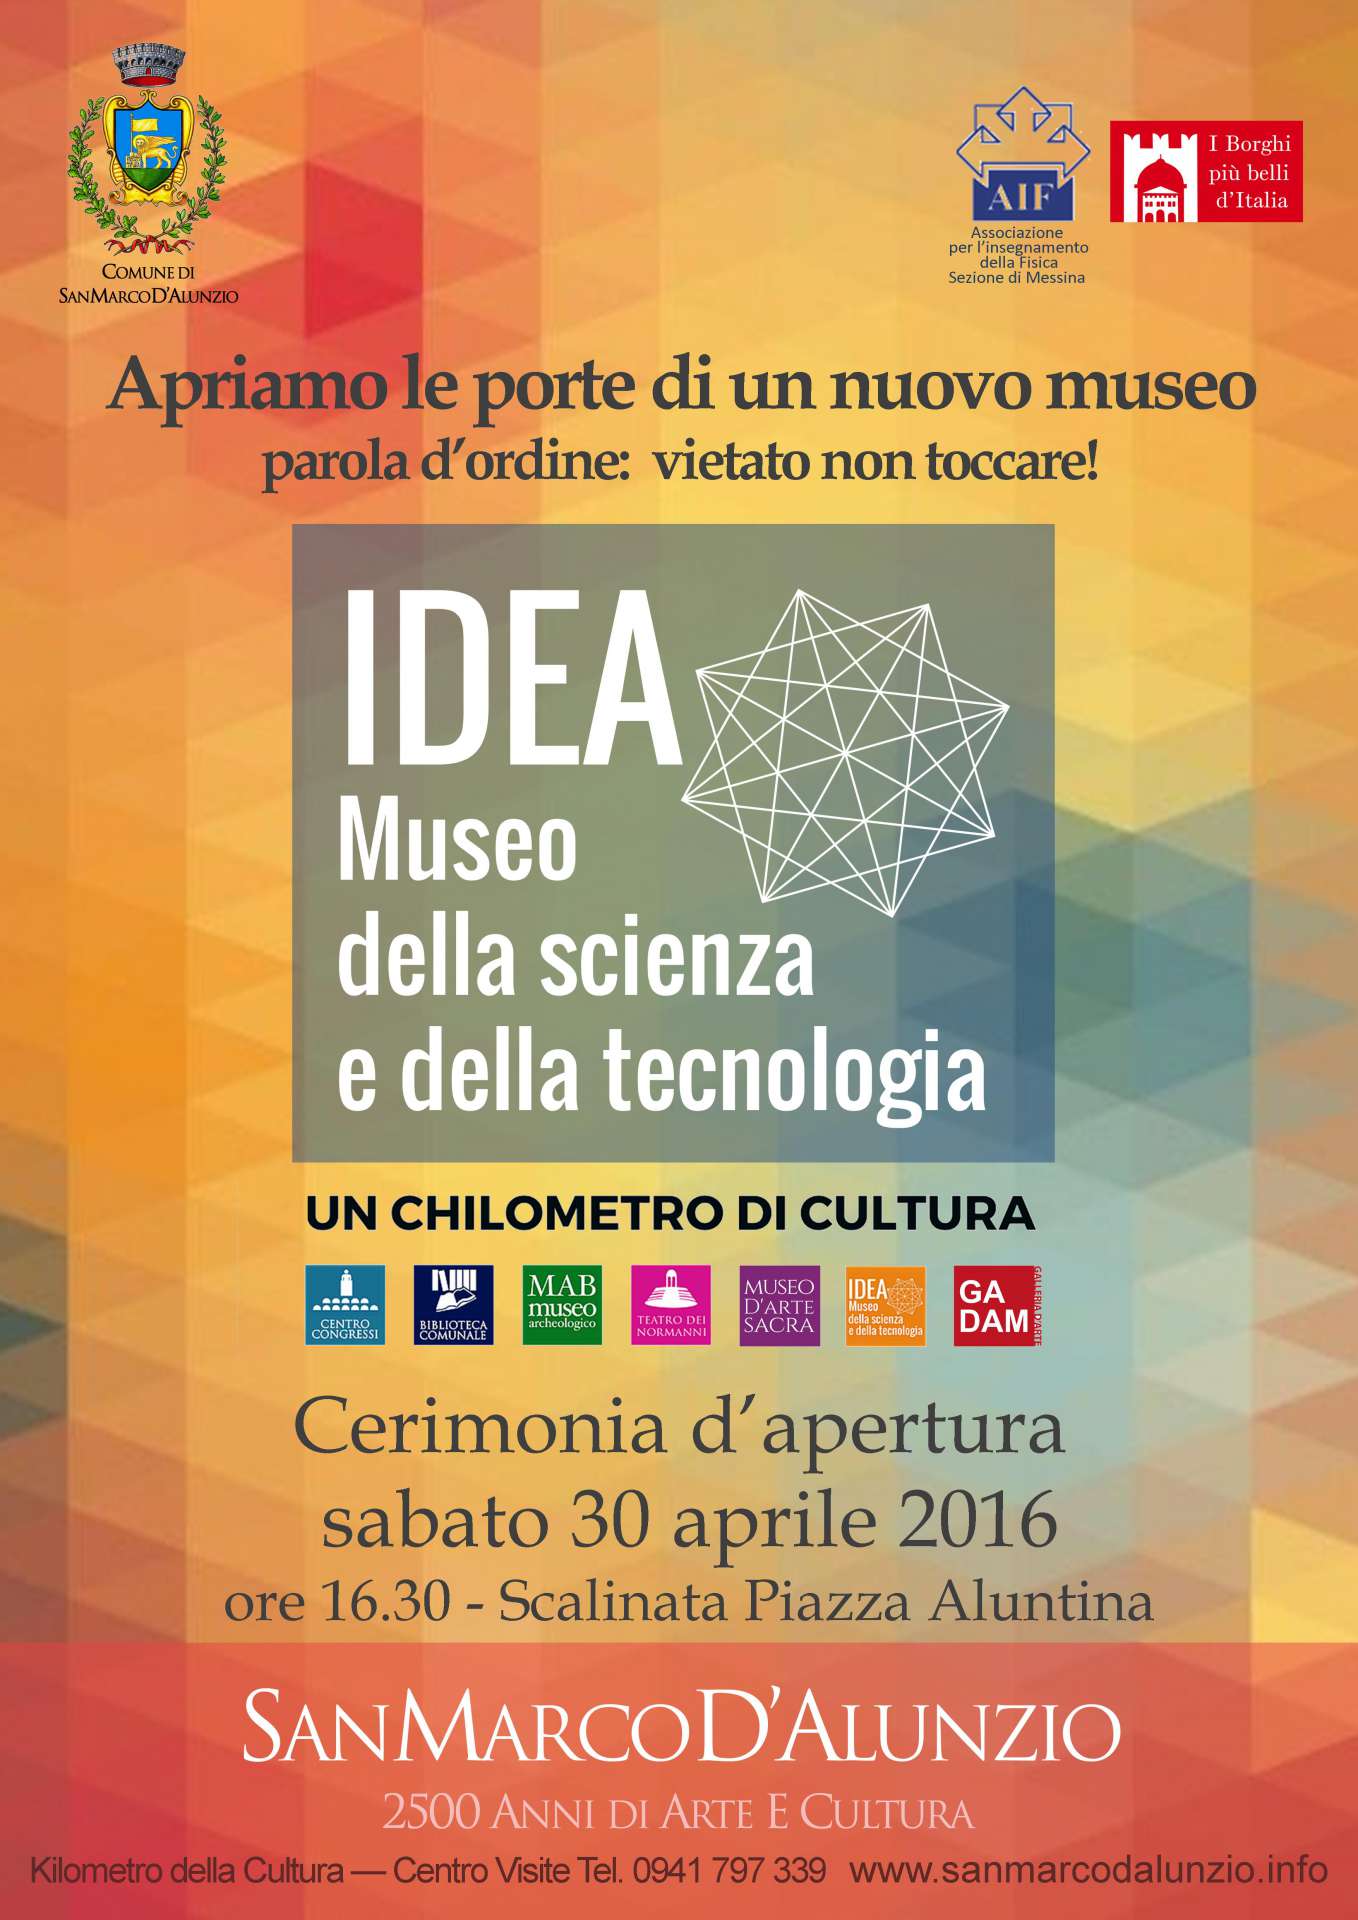 Το SAN MARCO D'ALUNZIO – IDEA, το νέο Μουσείο Επιστήμης και Τεχνολογίας, ανοίγει